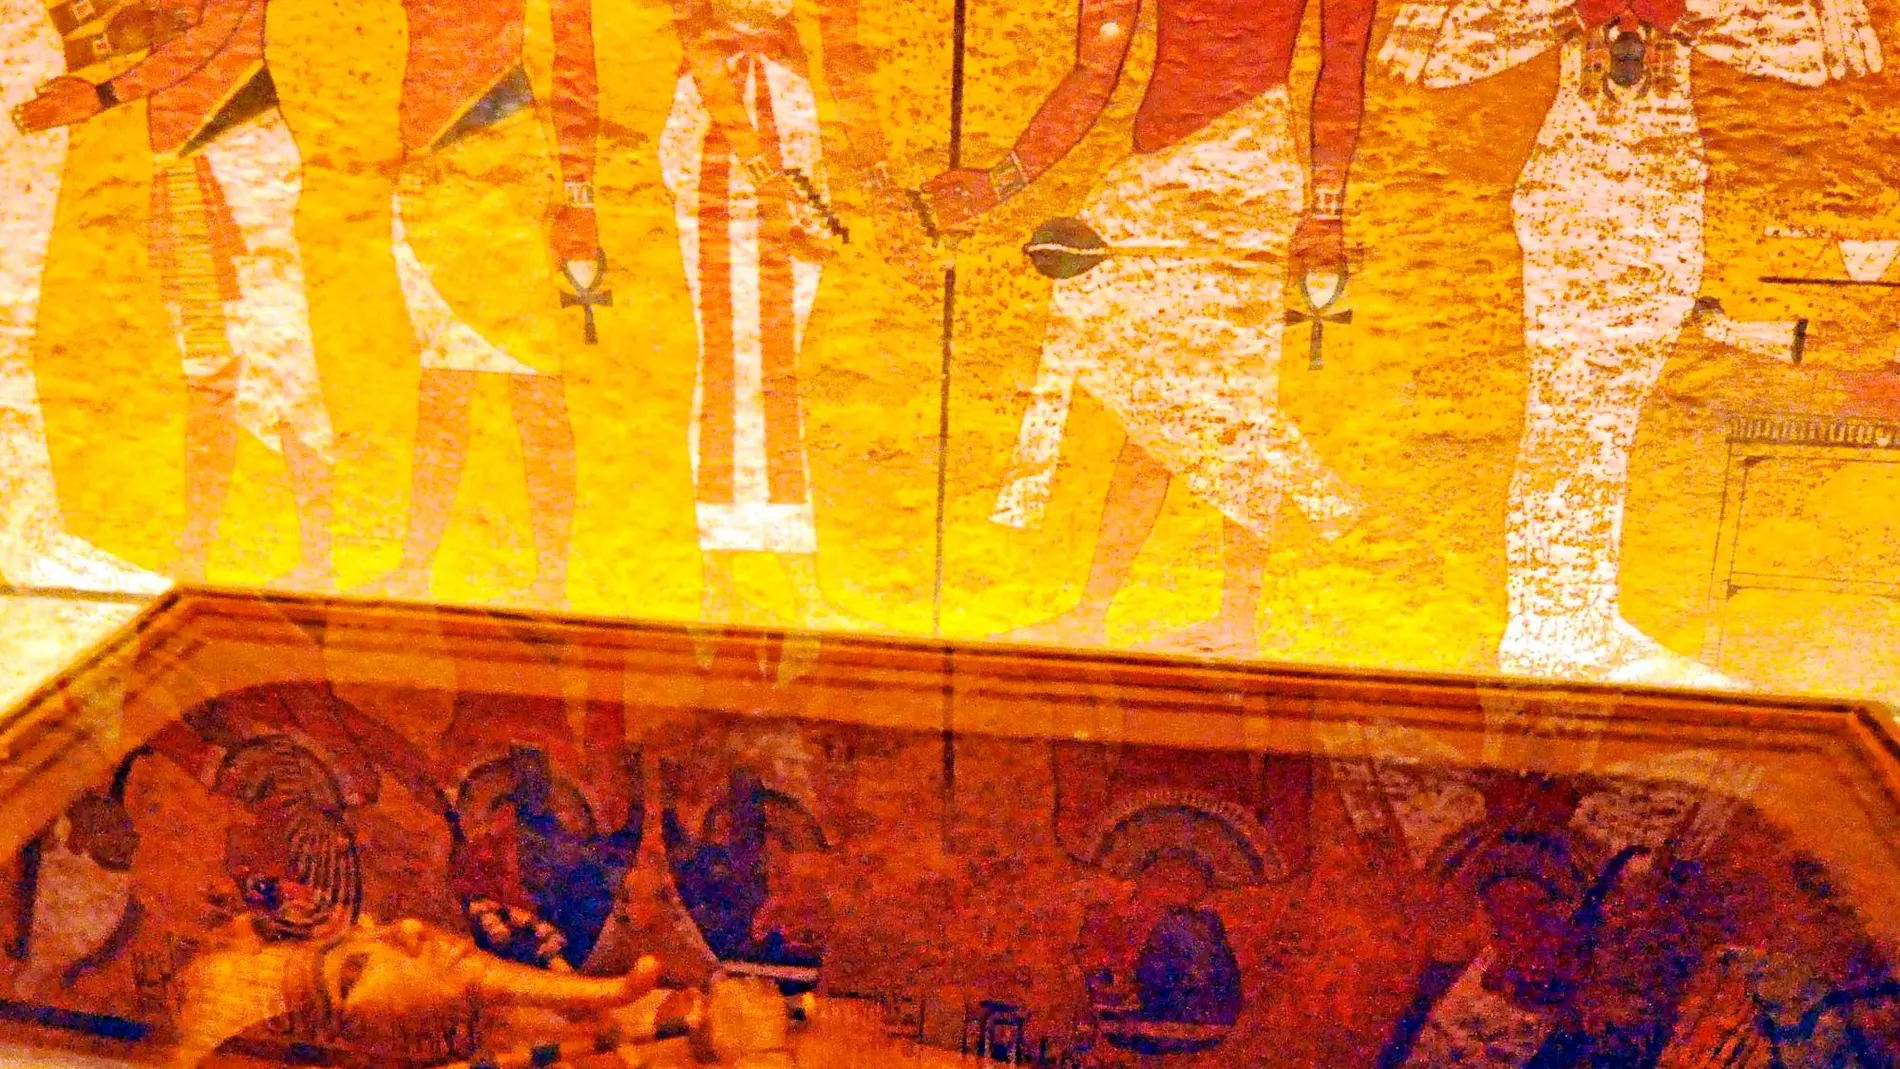 La tumba de Tutankamón ha recuperado en la restauración parte del atractivo que había perdido durante estos años de exposición al público